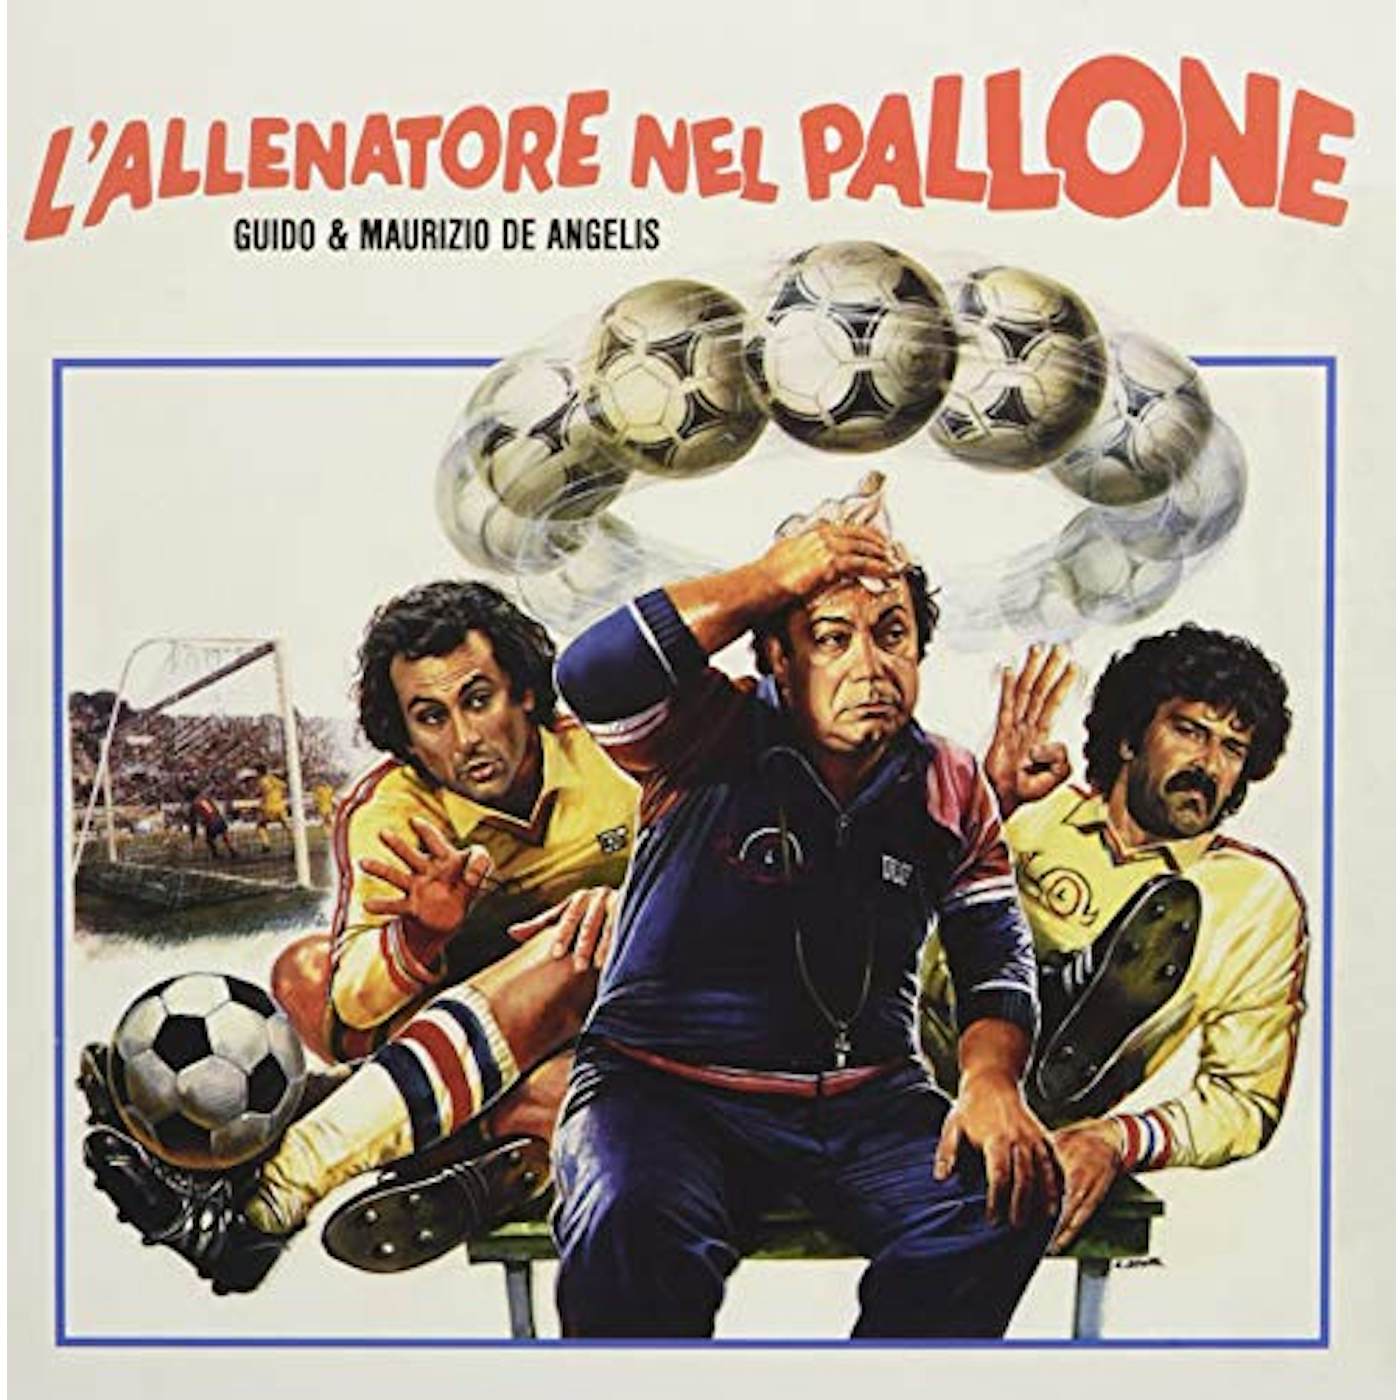 Guido & Maurizio De Angelis L'ALLENATORE NEL PALLONE / Original Soundtrack Vinyl Record